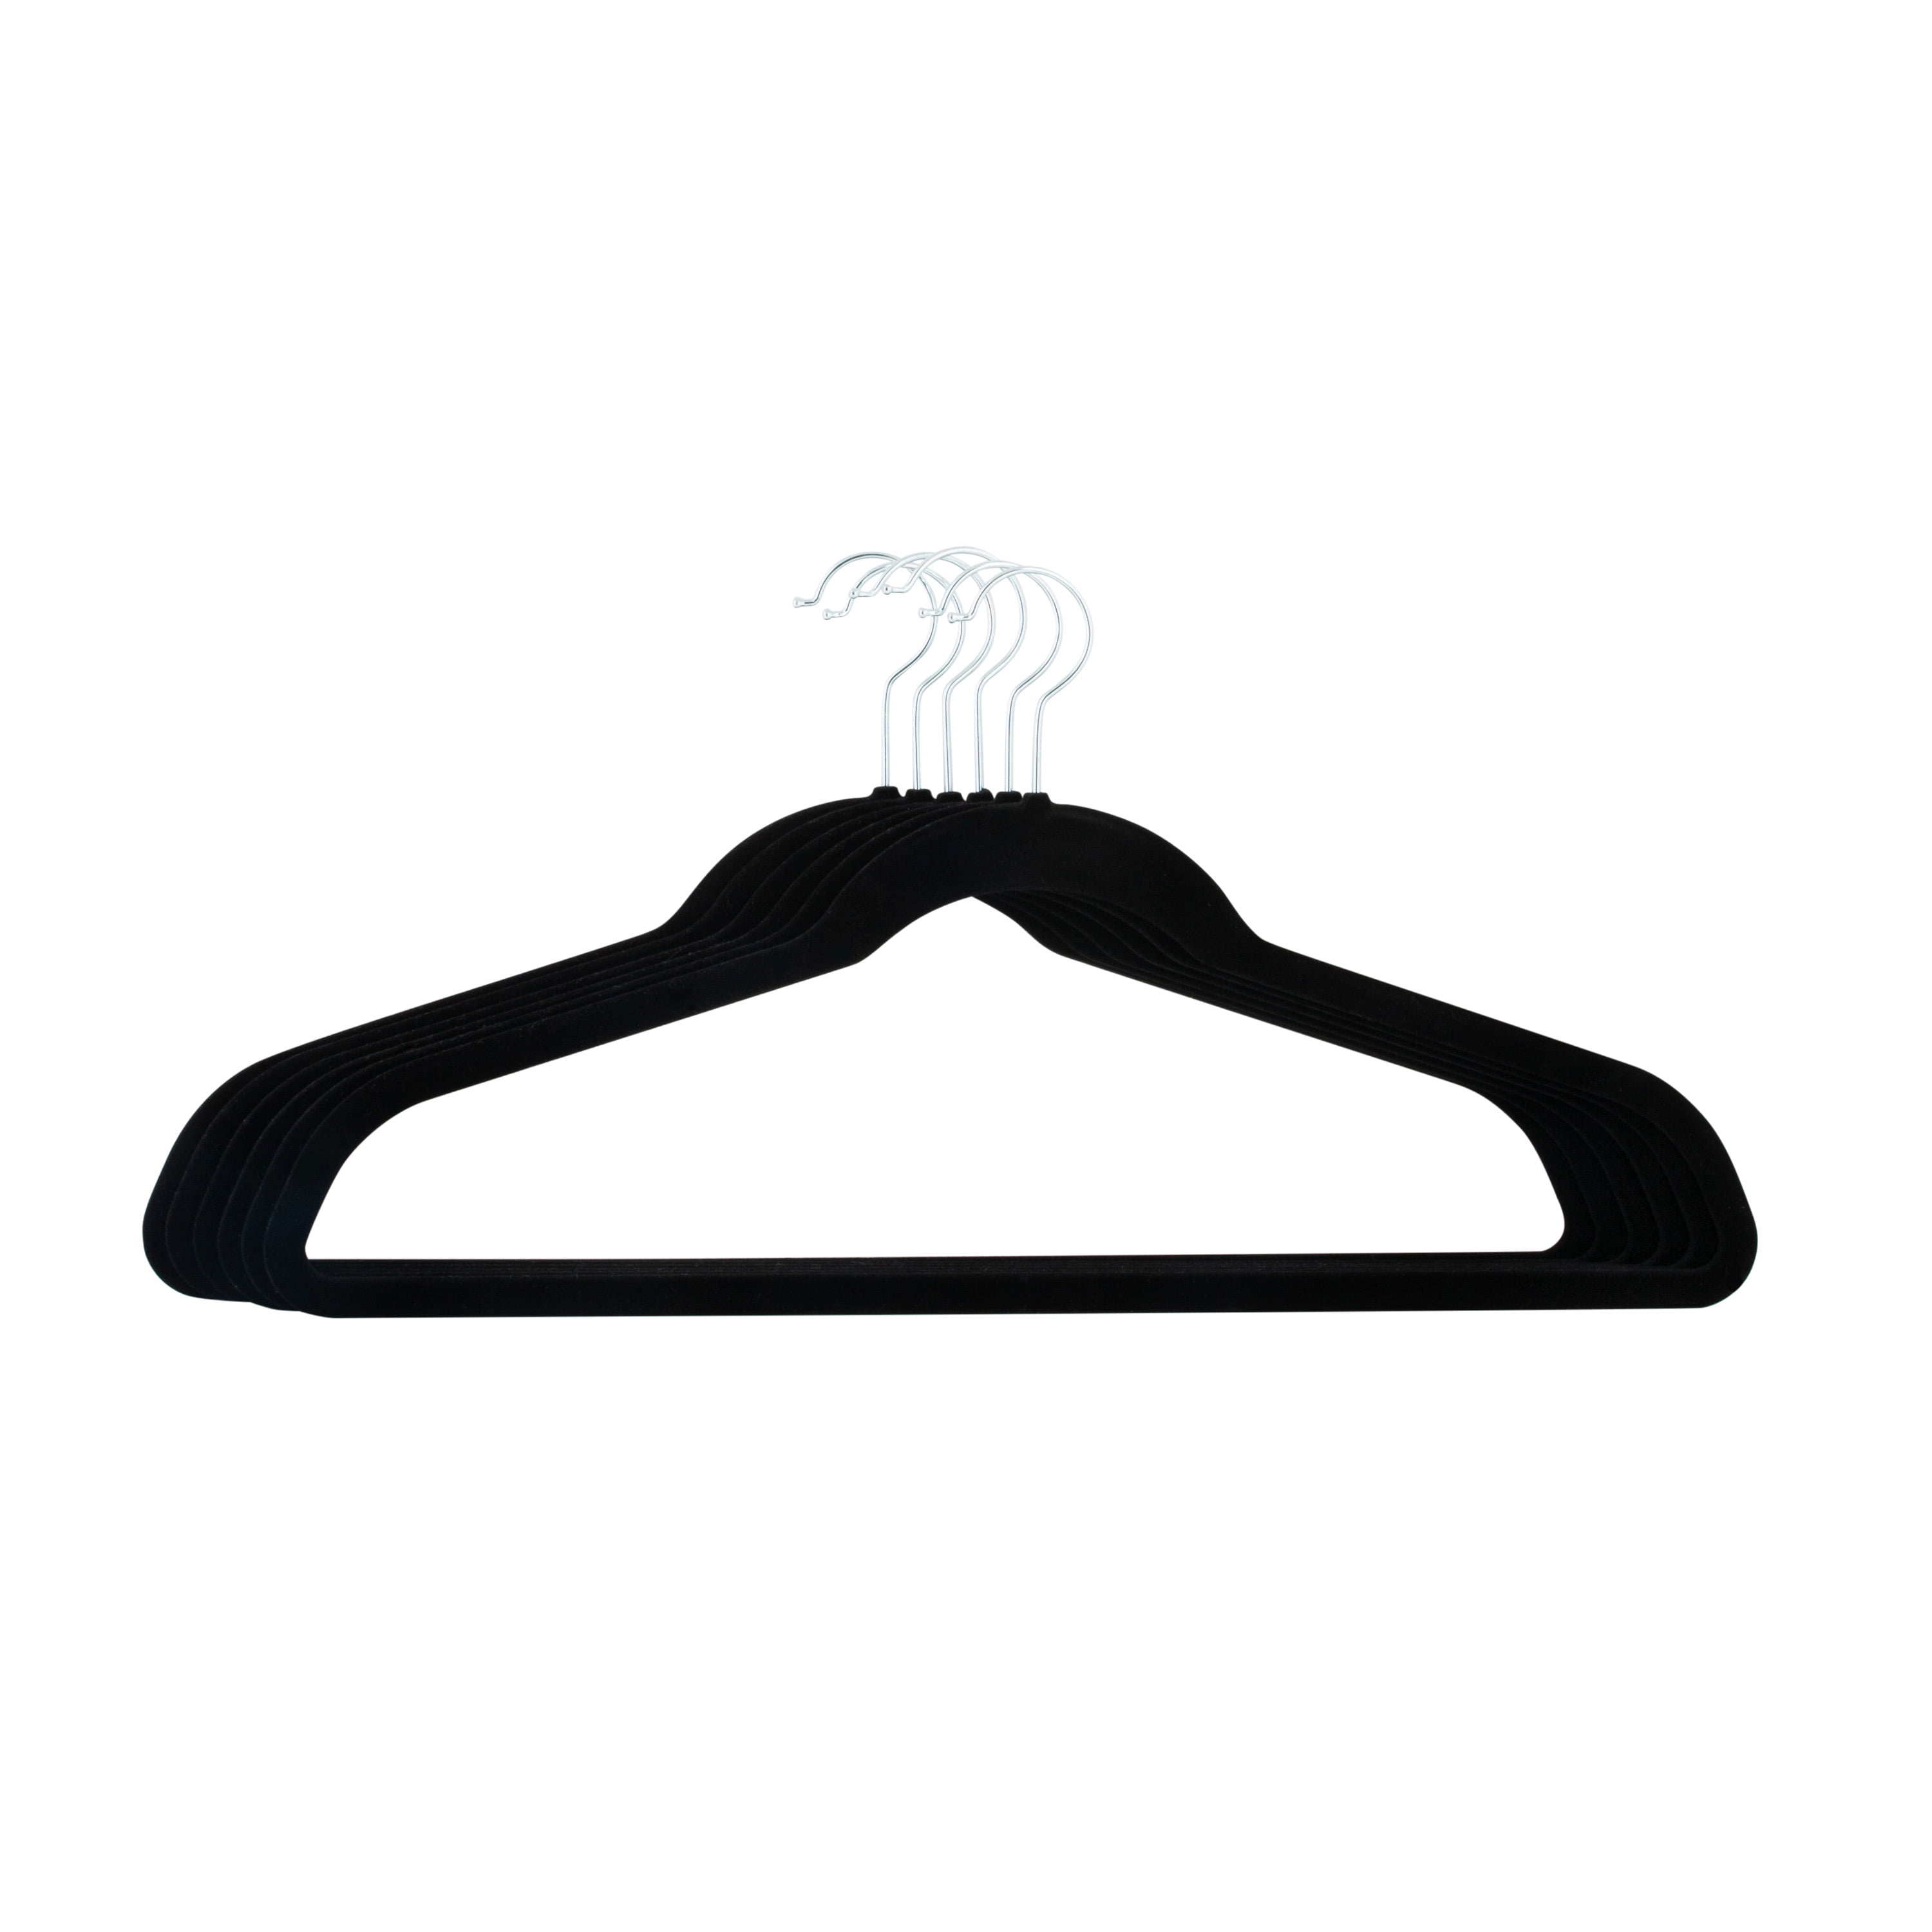 Premium Velvet Baby Hangers for Closet 50 Pack, 11.8 Safe Durable